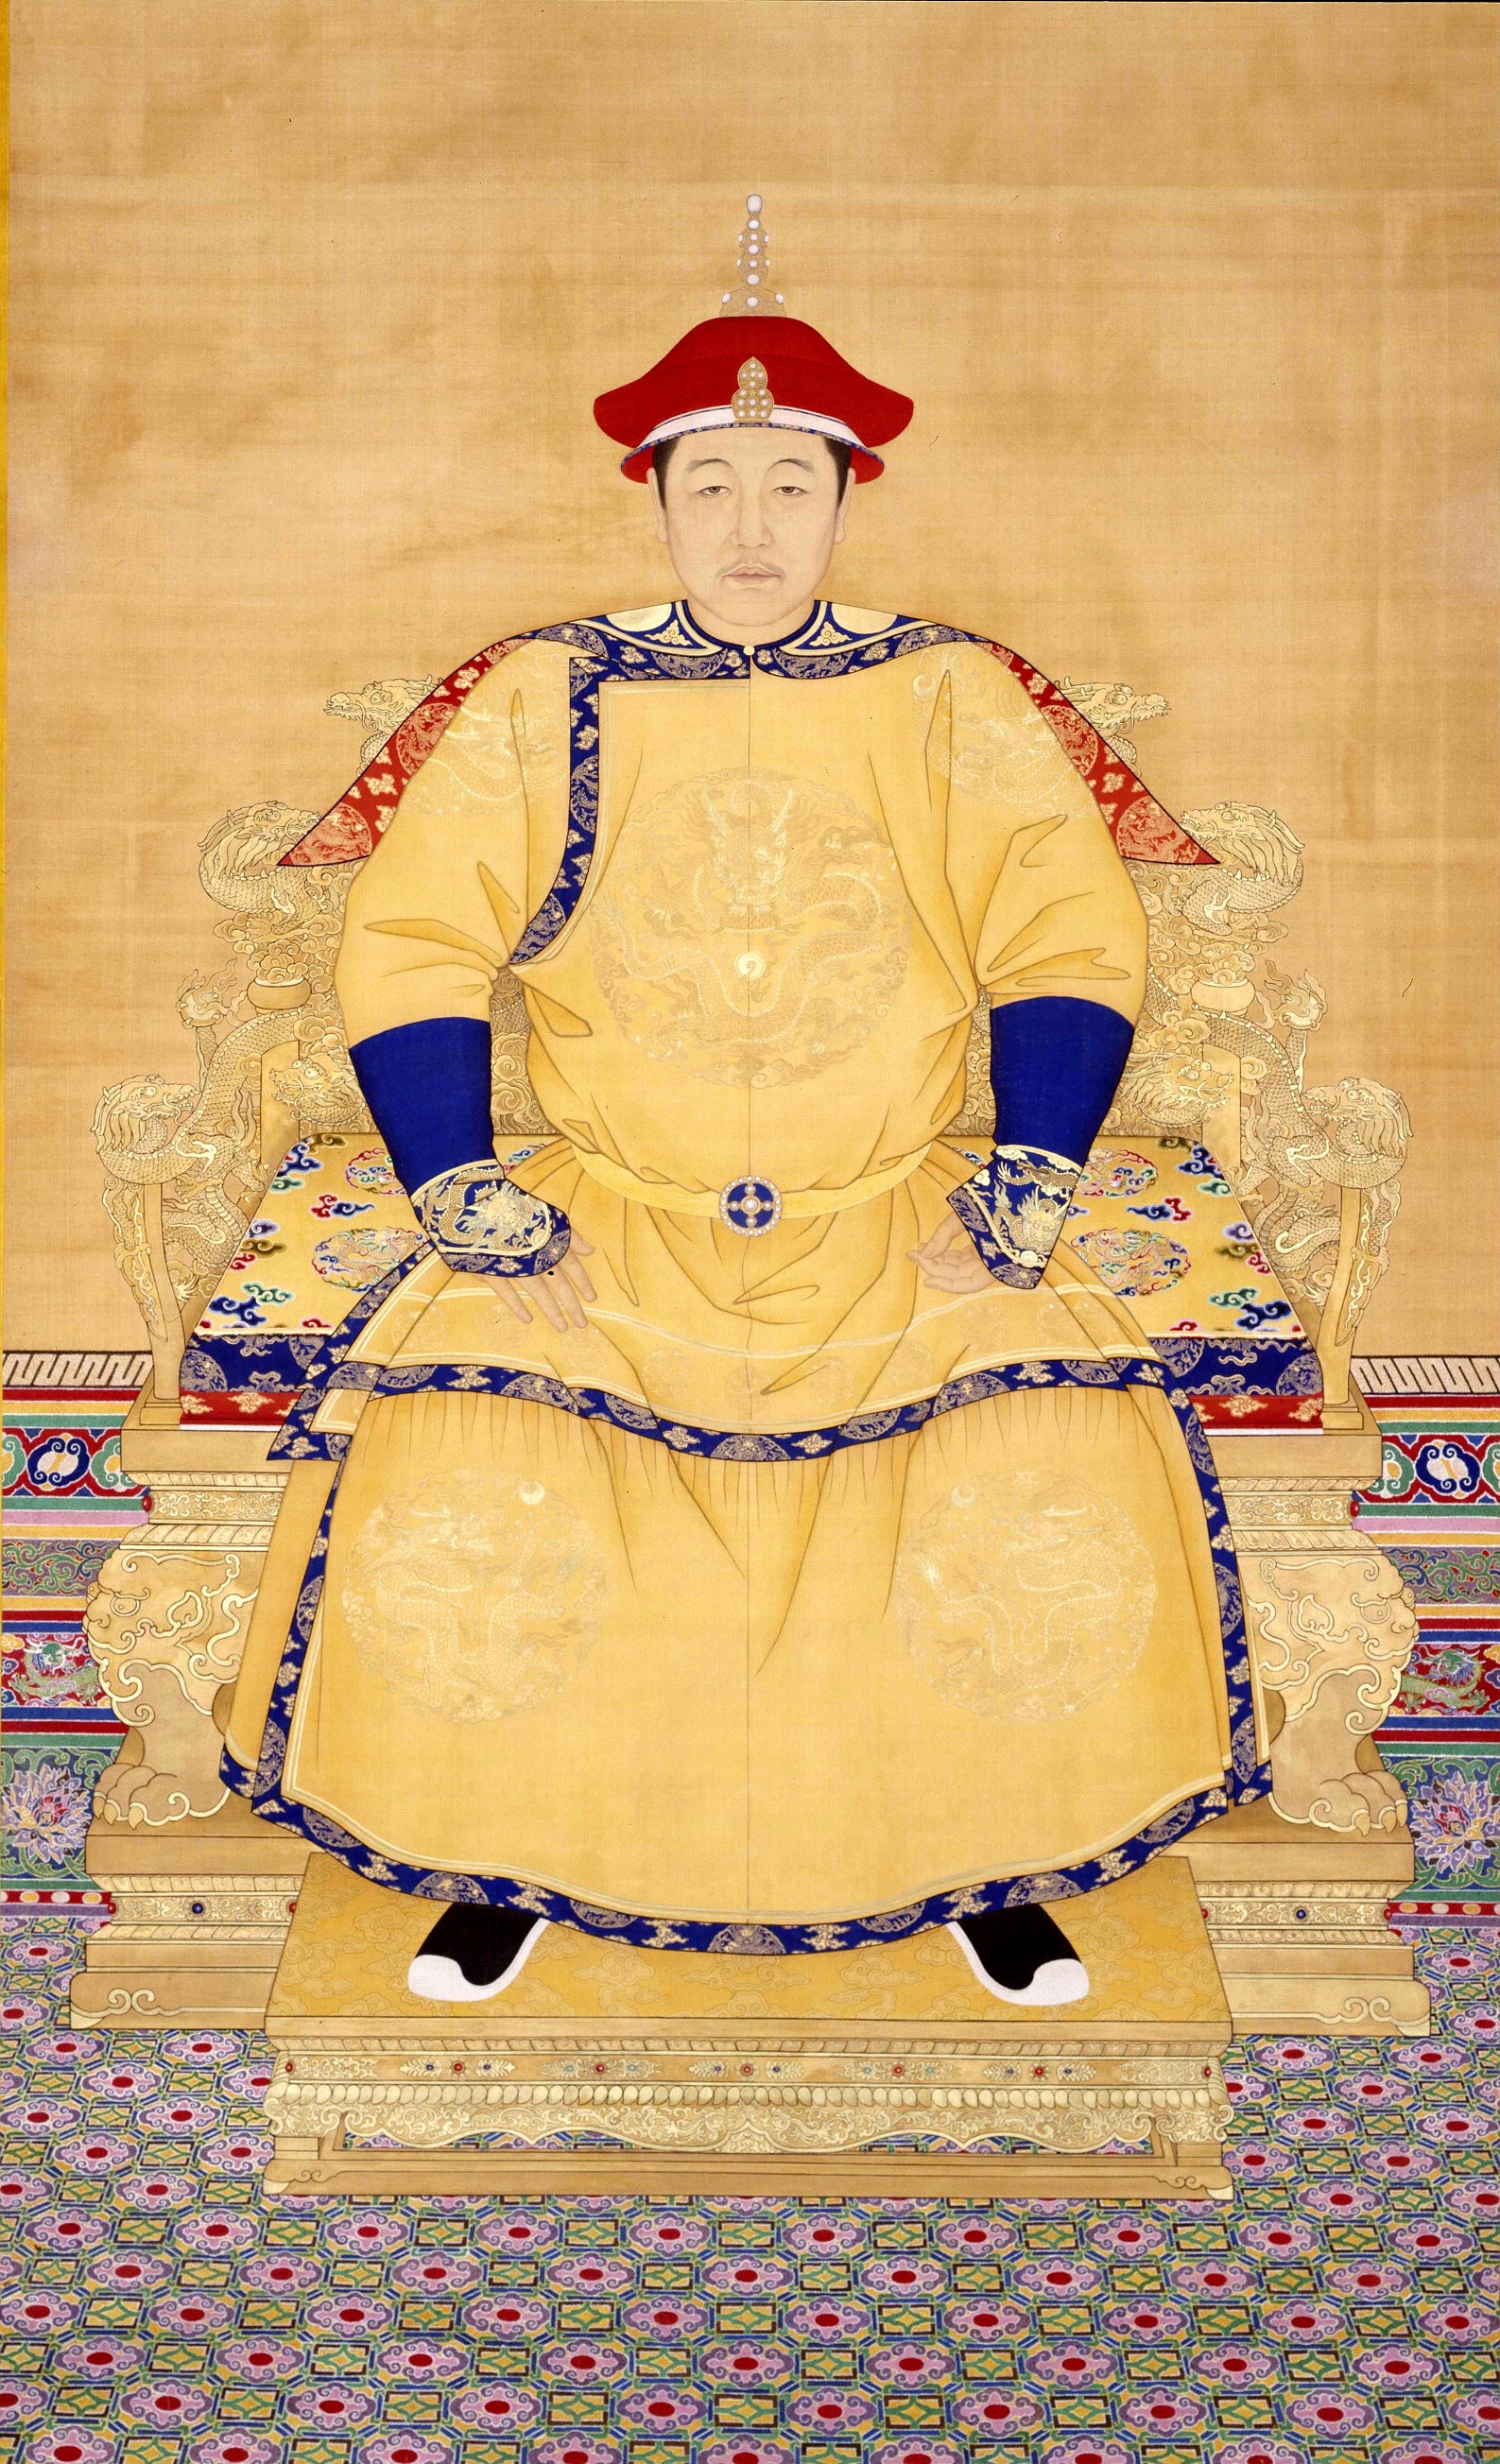 Emperor Shunzhi